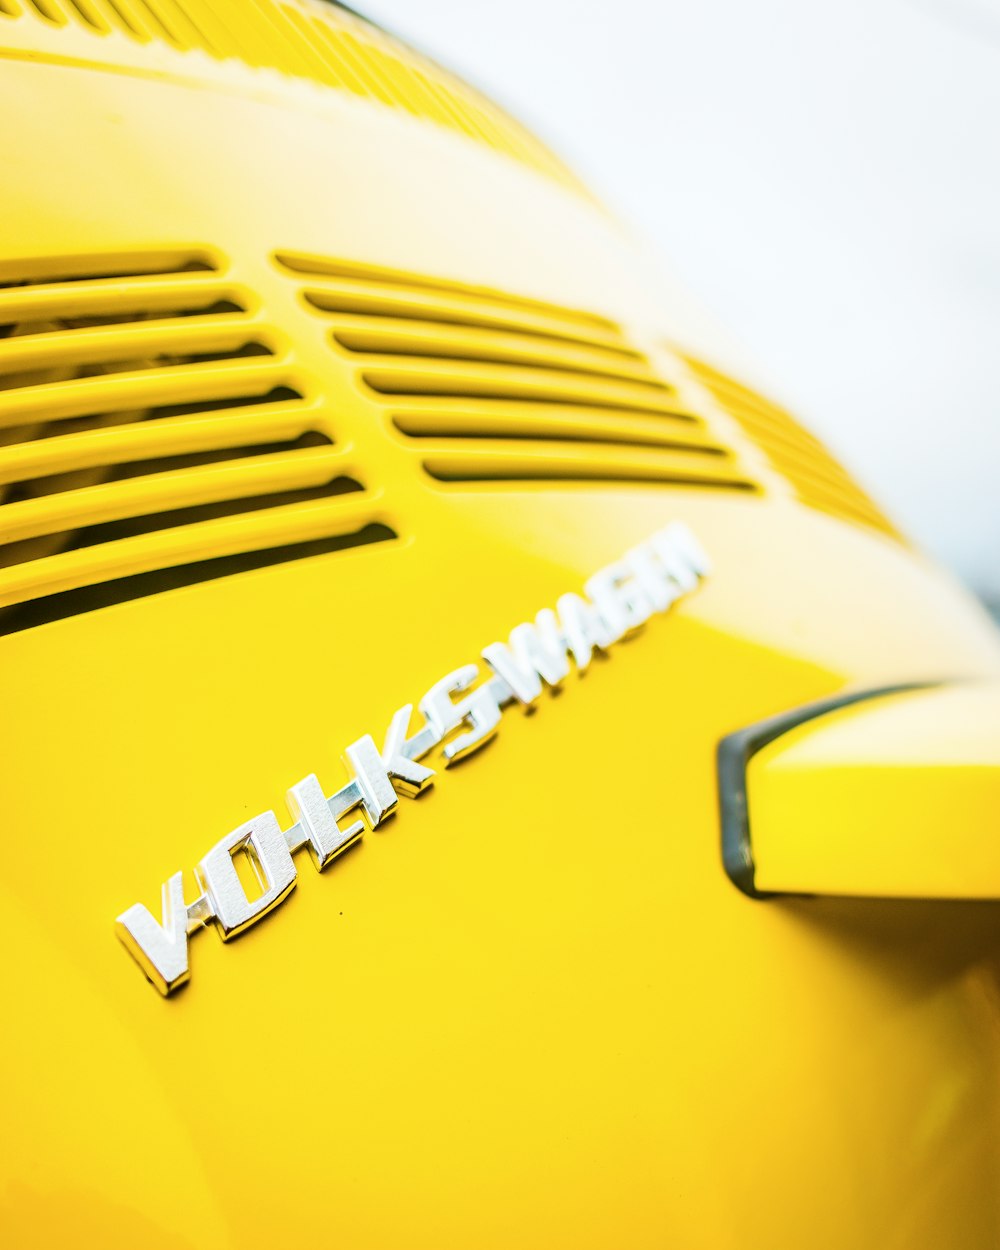 véhicule Volkswagen jaune